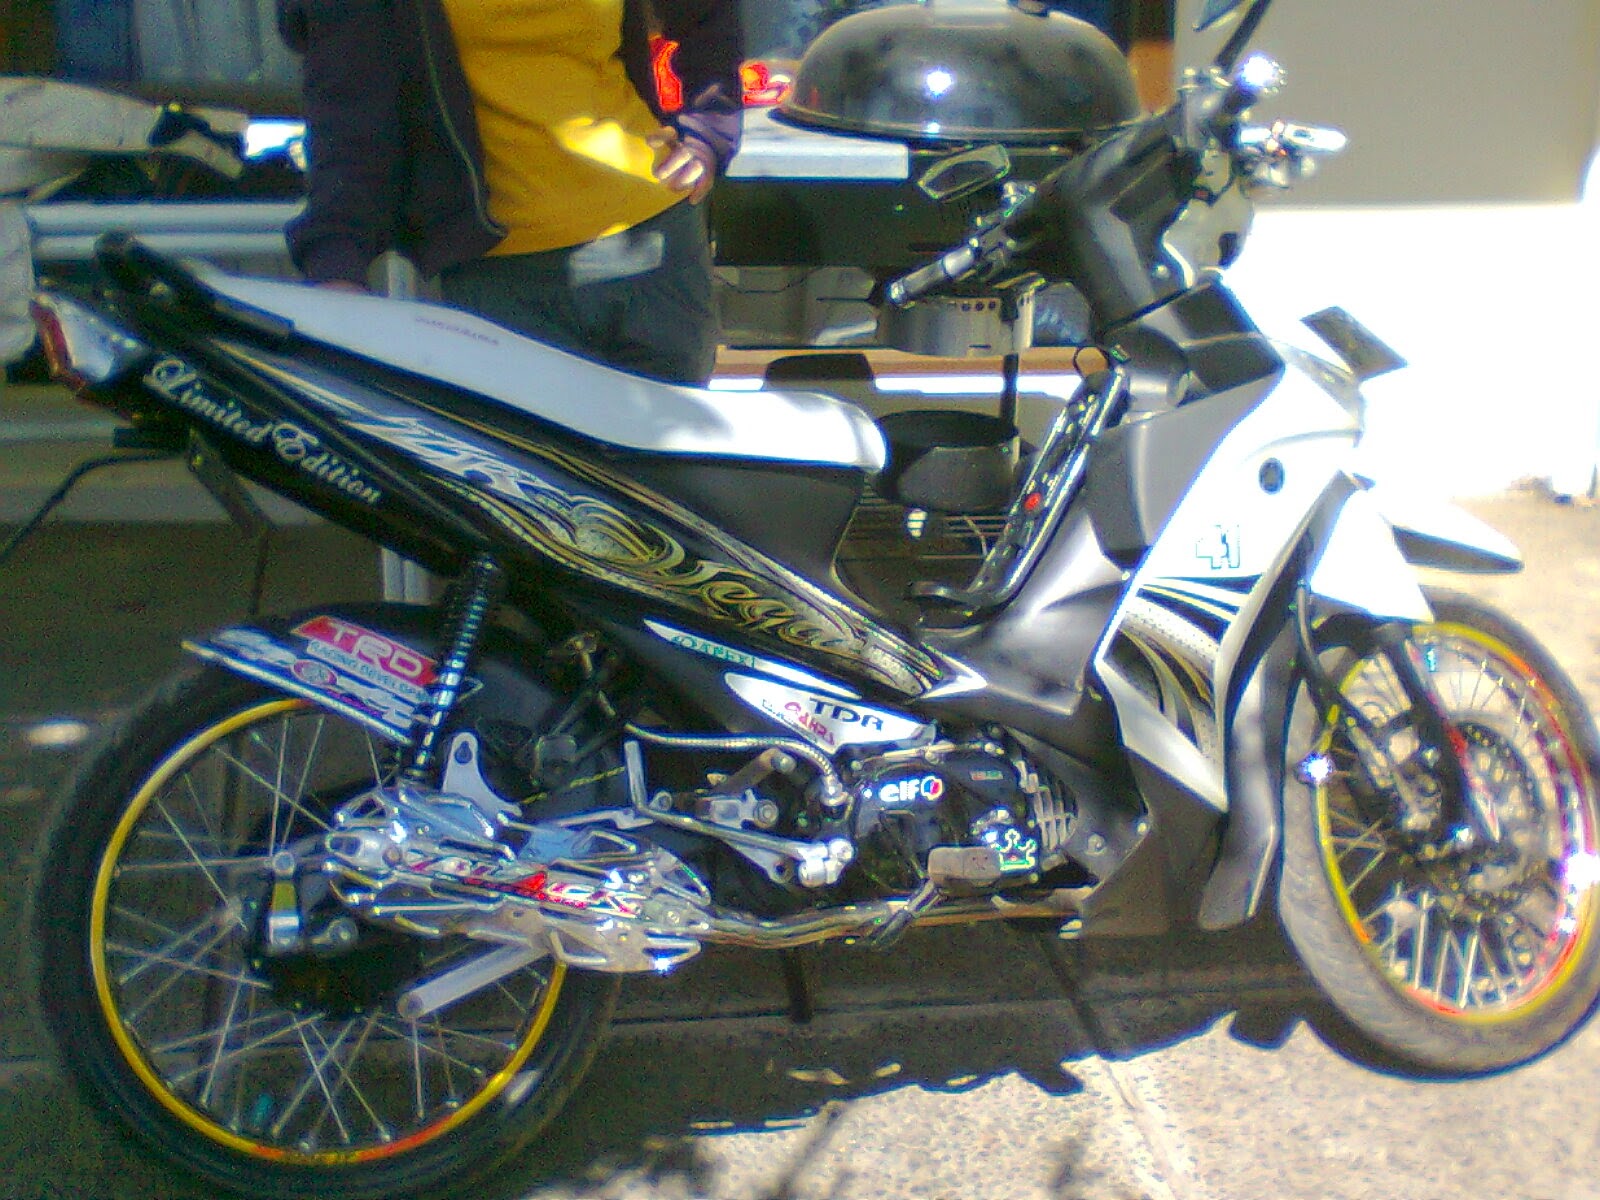 98 Cara Modifikasi Motor Yamaha Vega Zr Terlengkap Kuroko Motor